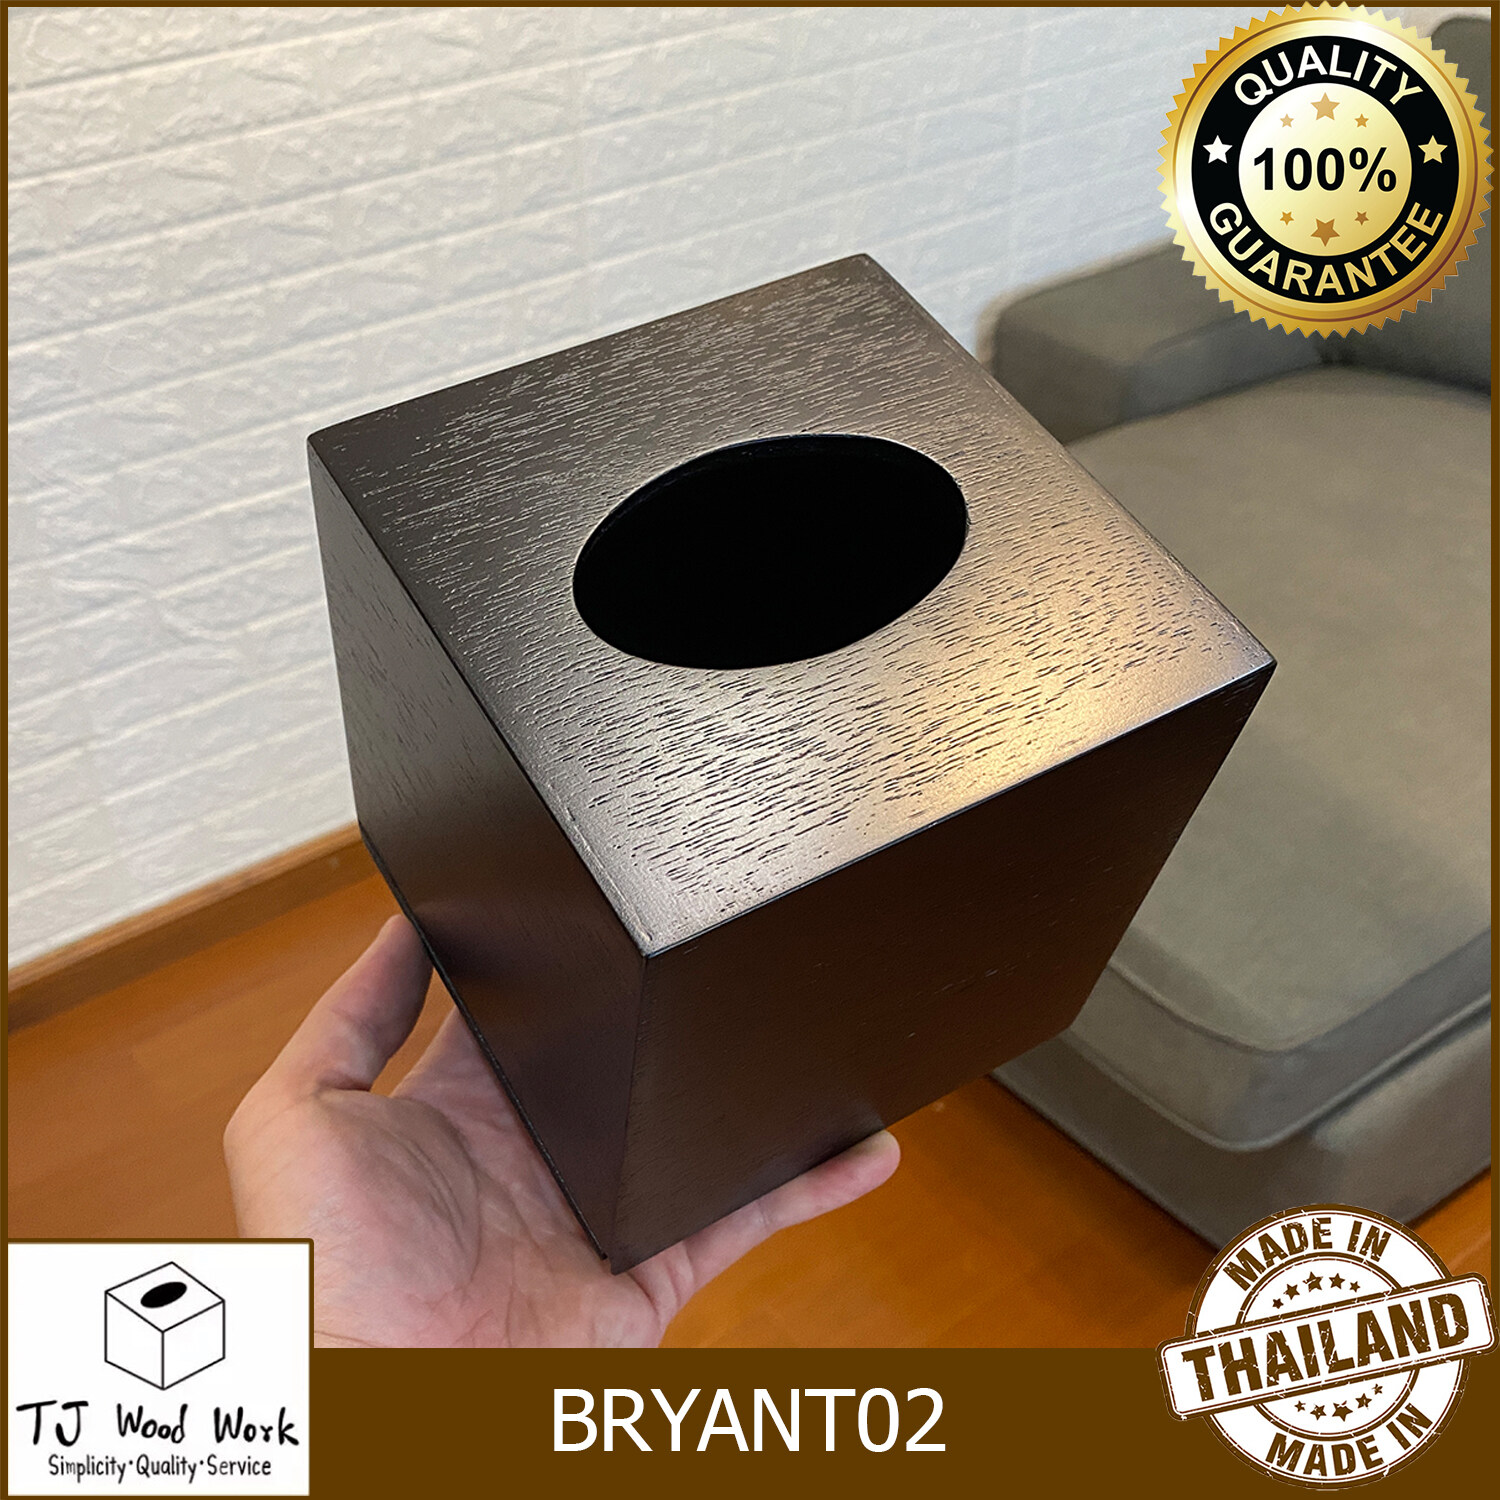 TJWW WOODEN TISSUE BOX BRYANT02 กล่องใส่กระดาษทิชชู่ไม้สีดำ กล่องใส่ทิชชูบ้าน โรงแรมผับ กล่องกระดาษเช็ดหน้า กล่องใส่กระดาษชำระ กล่องใส่ทิชชู่ป็อบ